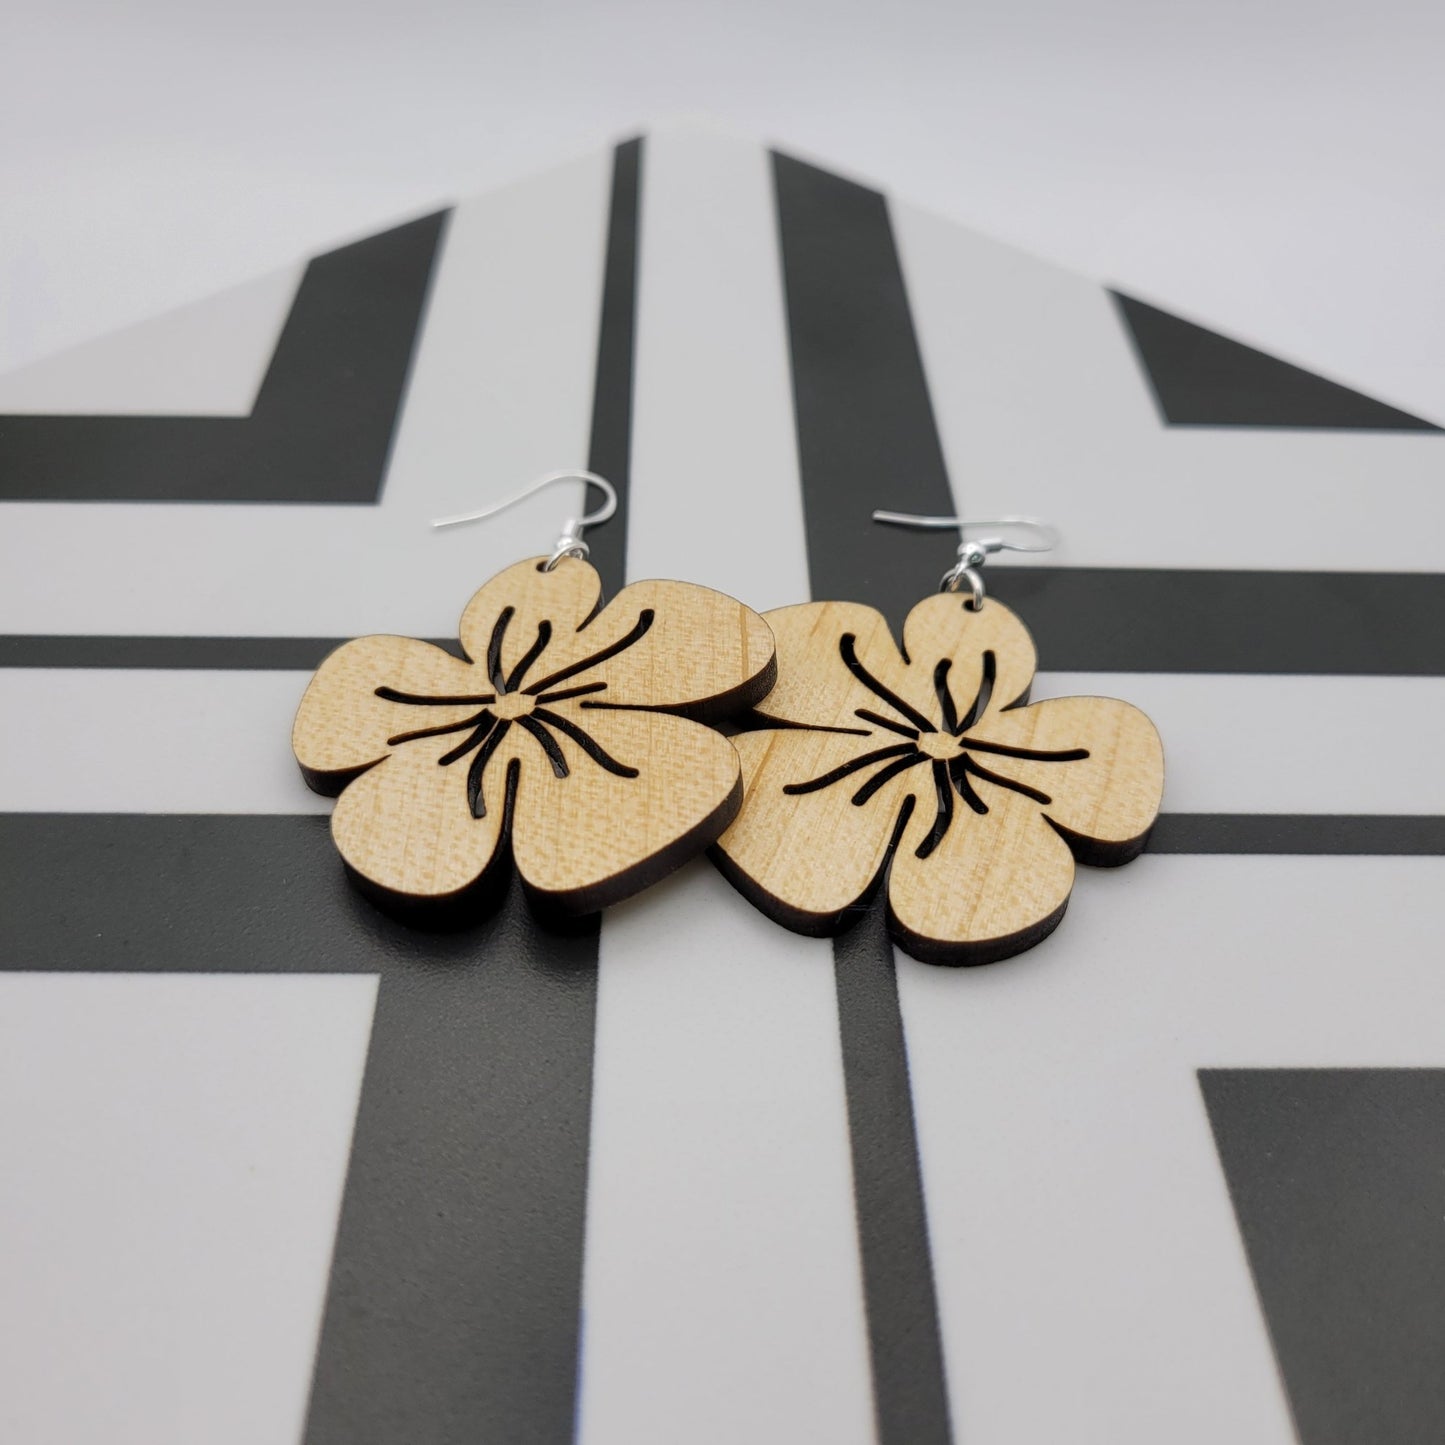 Hibiscus Flower Wood Earrings - 4 Arrows Creations